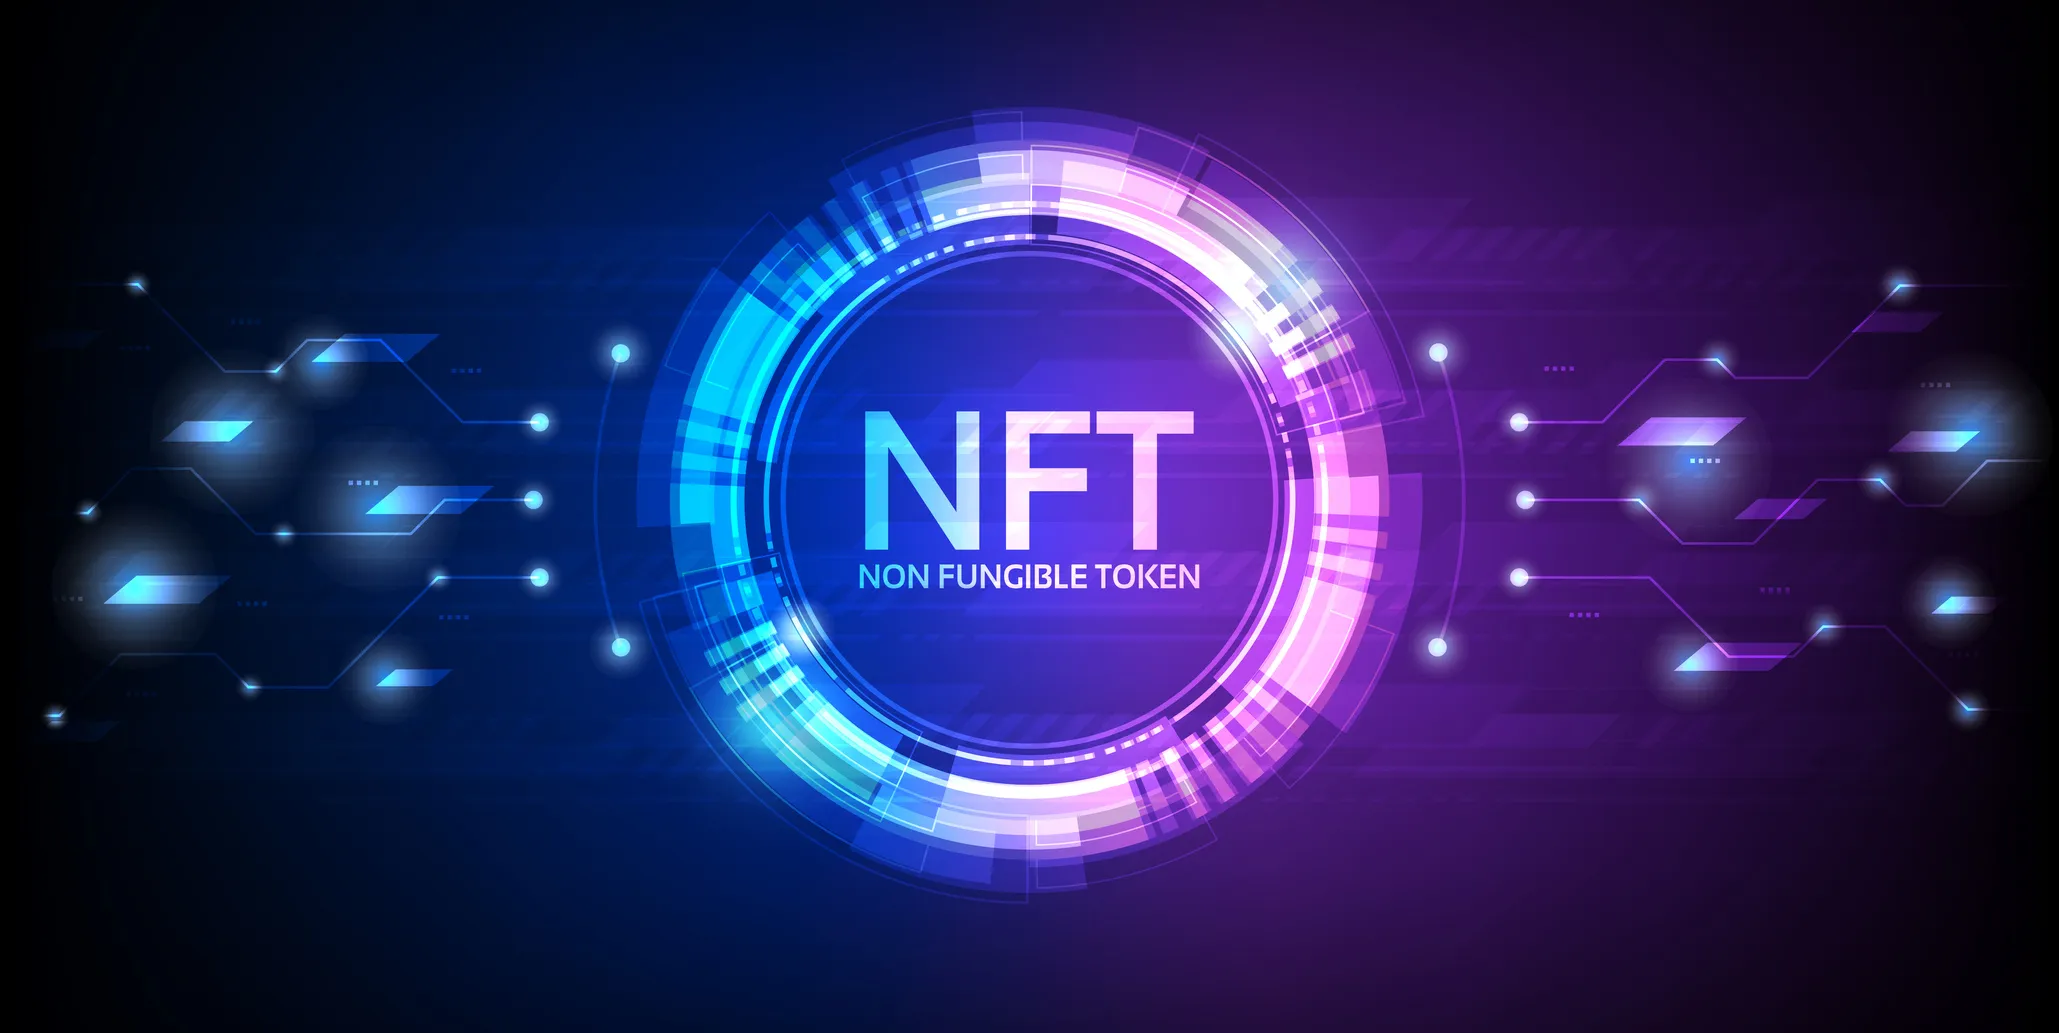 这是一张展示“NFT 非同质化代币”概念的图片，以蓝紫色调为主，图中有光环和数字元素，科技感强。